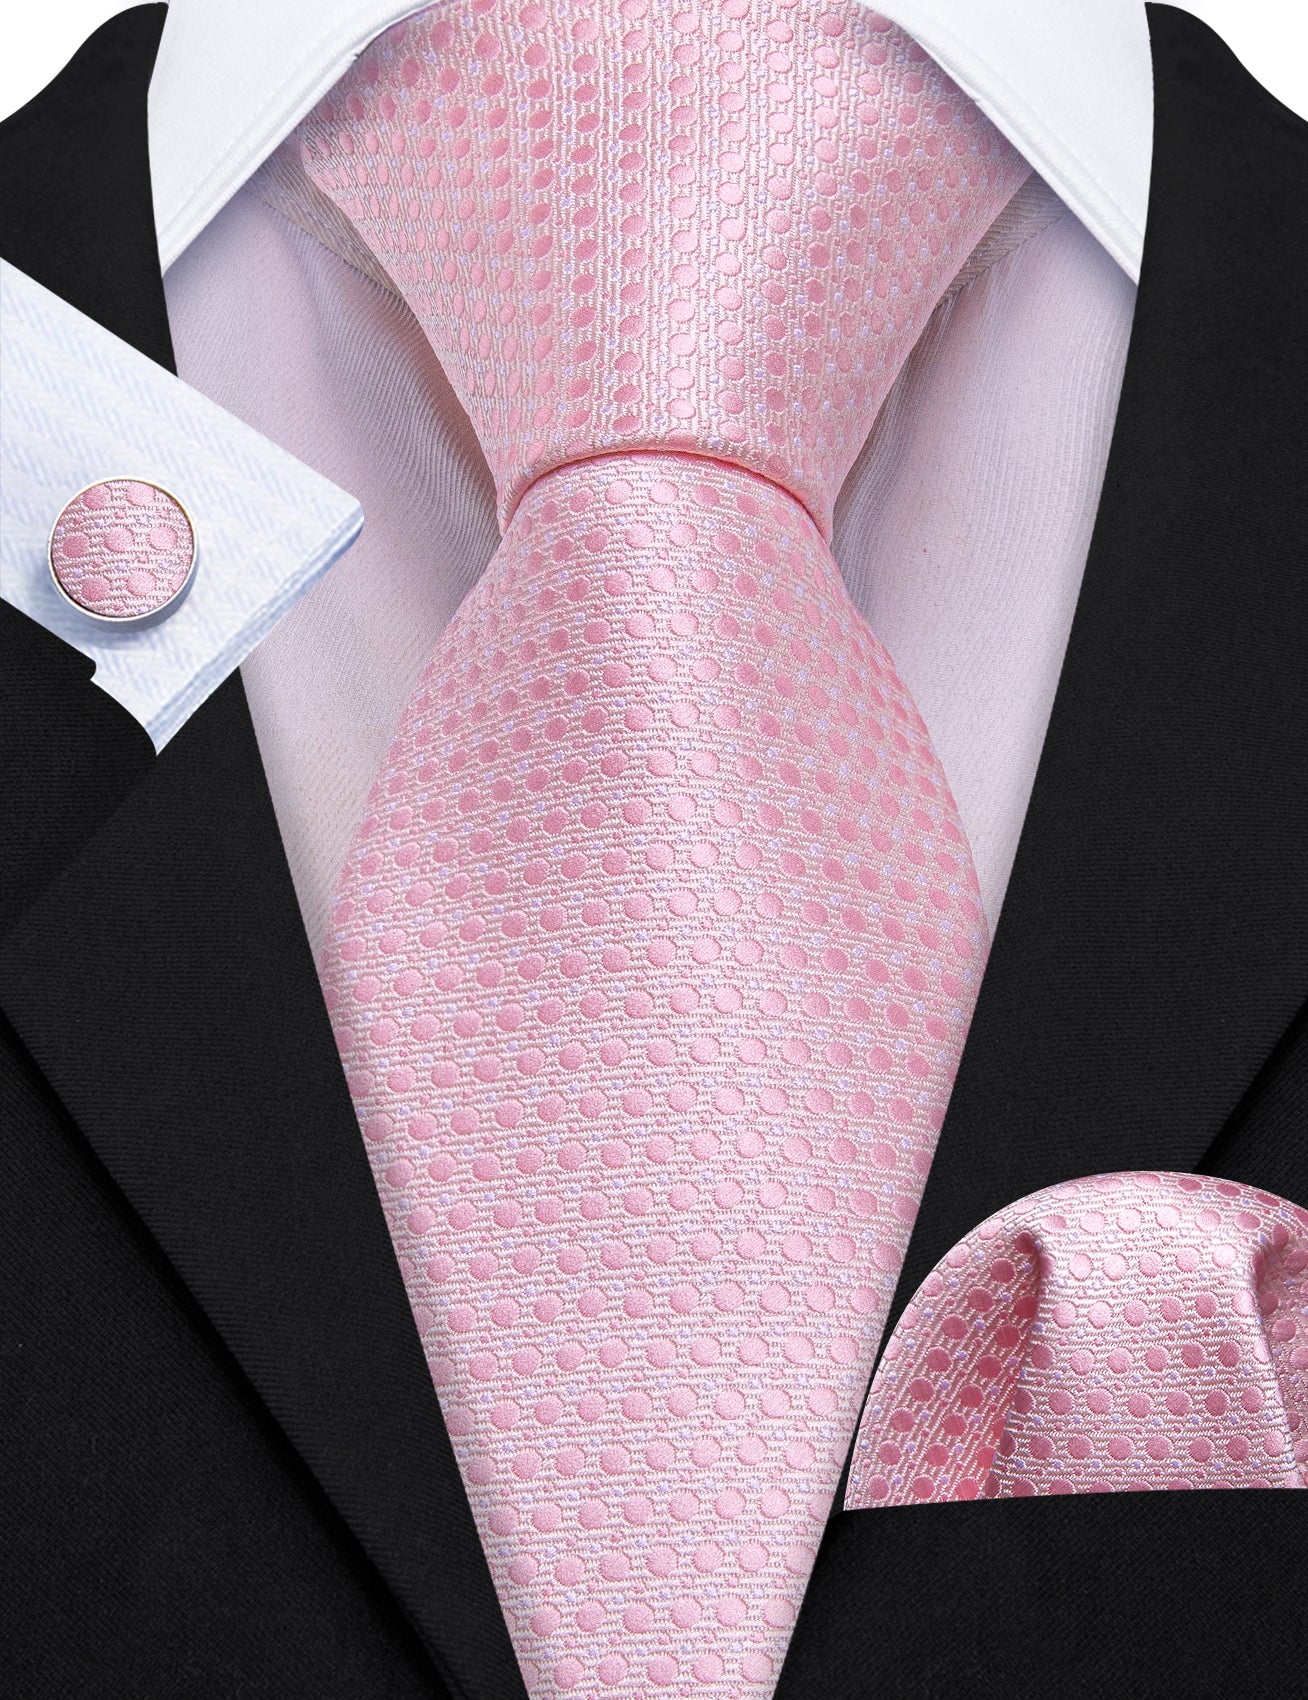 Pink Polka Dot Silk Necktie Pocket Square Cufflinks Set